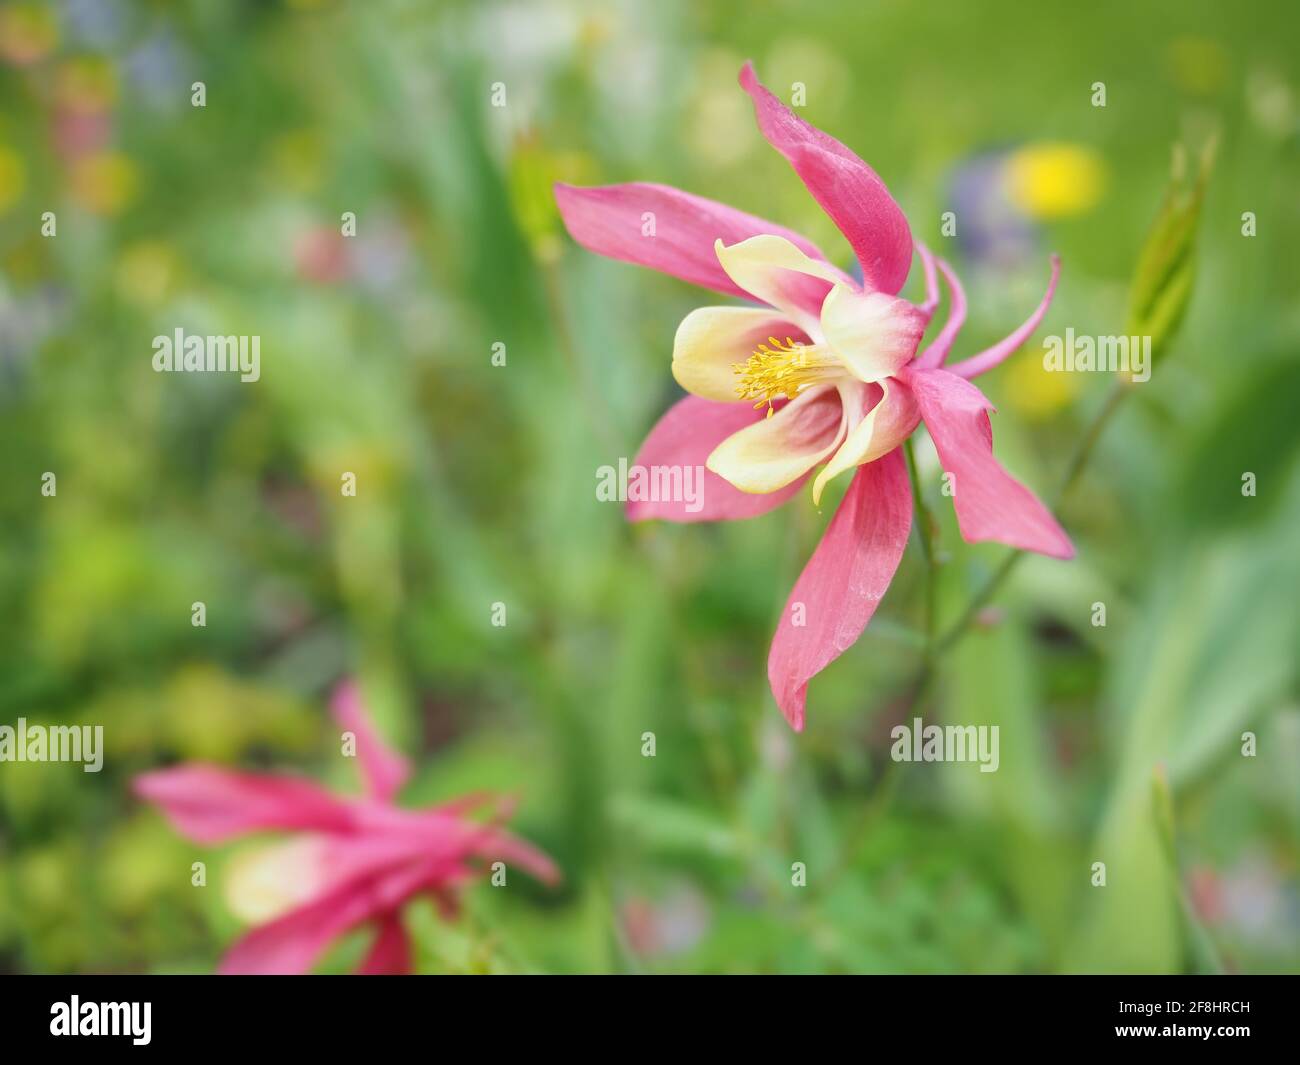 Pink Columbine Aquilegia flowers in a garden Stock Photo